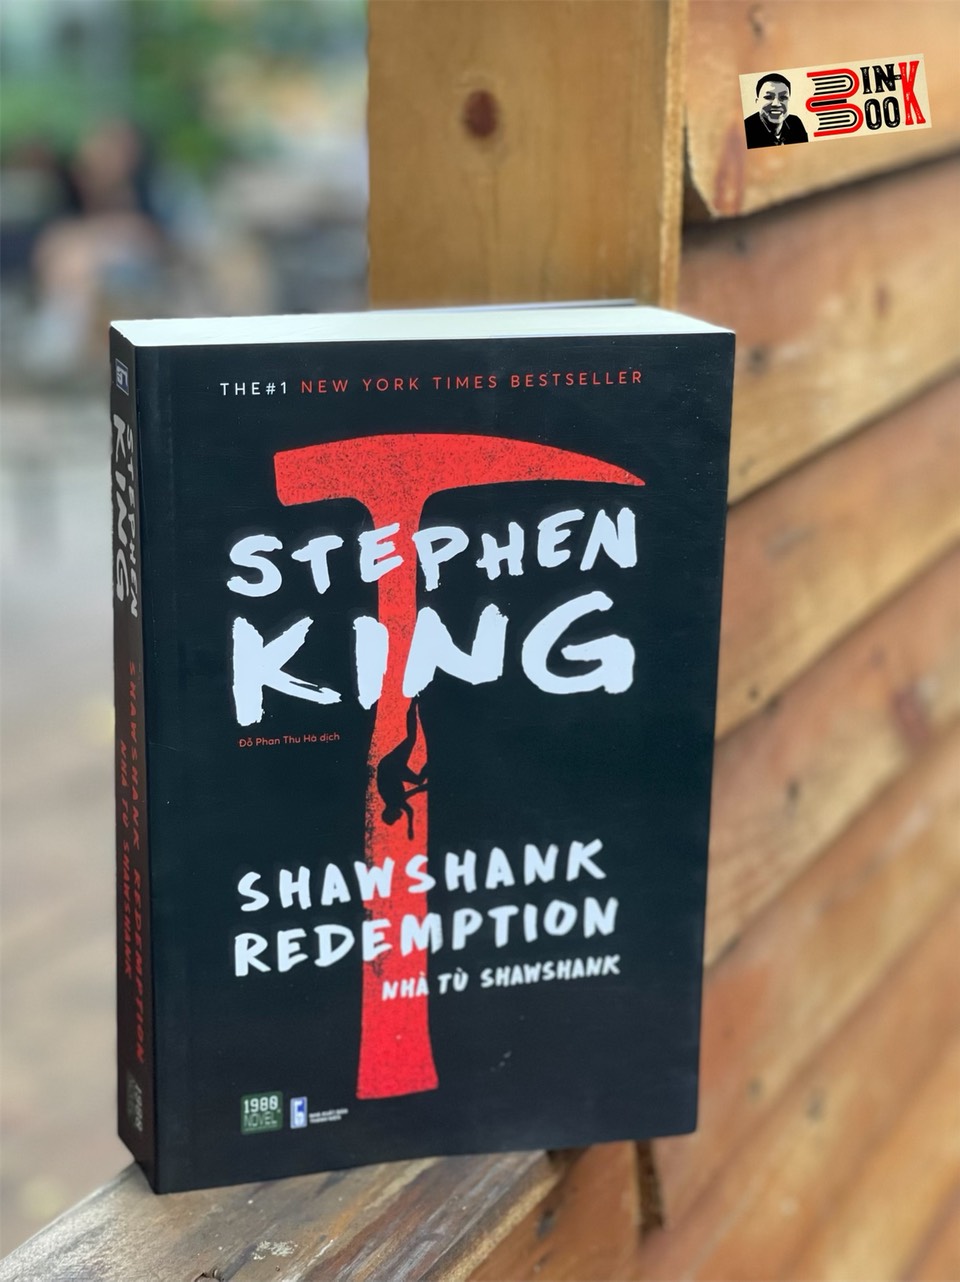 (The 1# New York Times Best Seller) THE SHAWSHANK REDEMPTION -  NHÀ TÙ SHAWSHANK - Stephen King – Đỗ Phan Thu Hà dịch – 1980 Books – NXB Thanh Niên